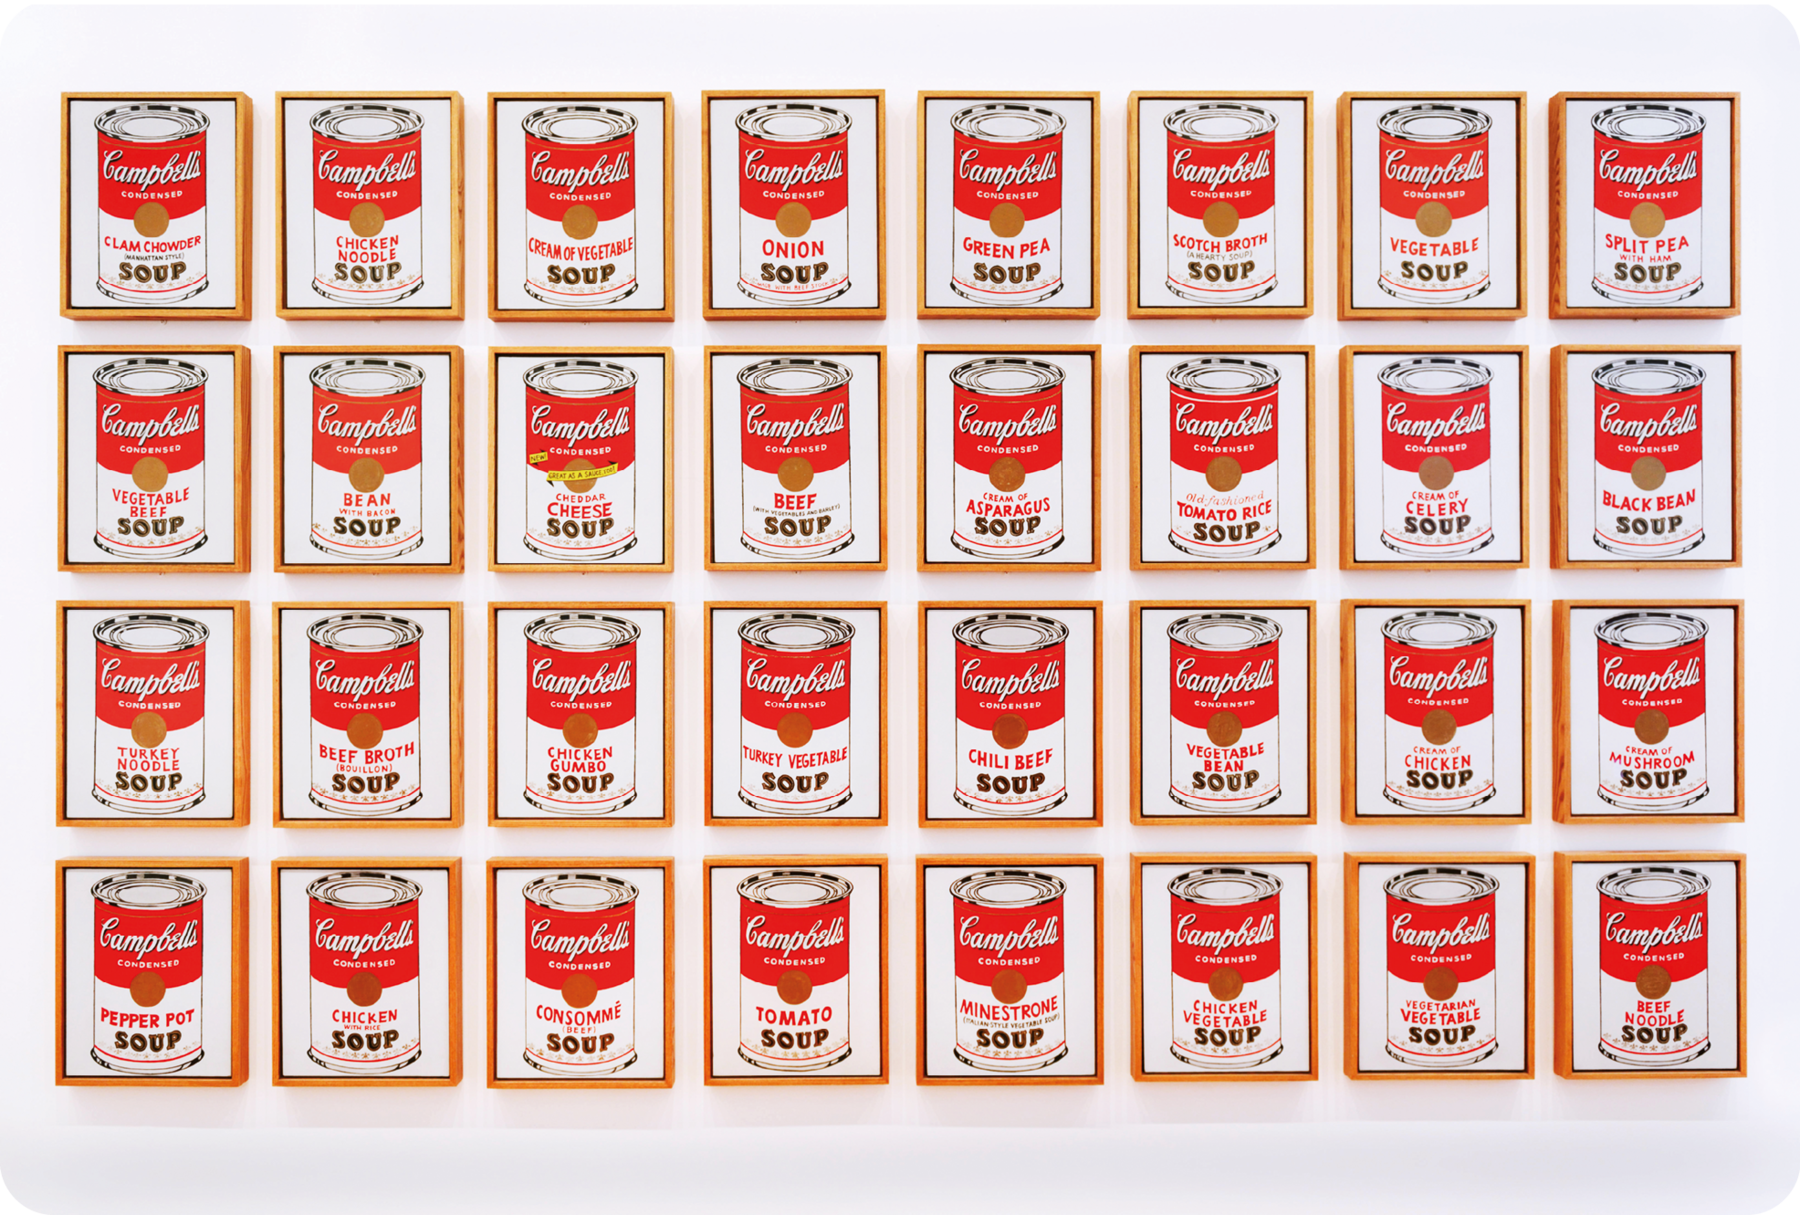 Pintura. Composição que apresenta a reprodução de 32 latas de sopa idênticas lado a lado divididas em quatro fileiras horizontais. Elas são de alumínio, apresentam cores vermelha e branca e a marca na embalagem.